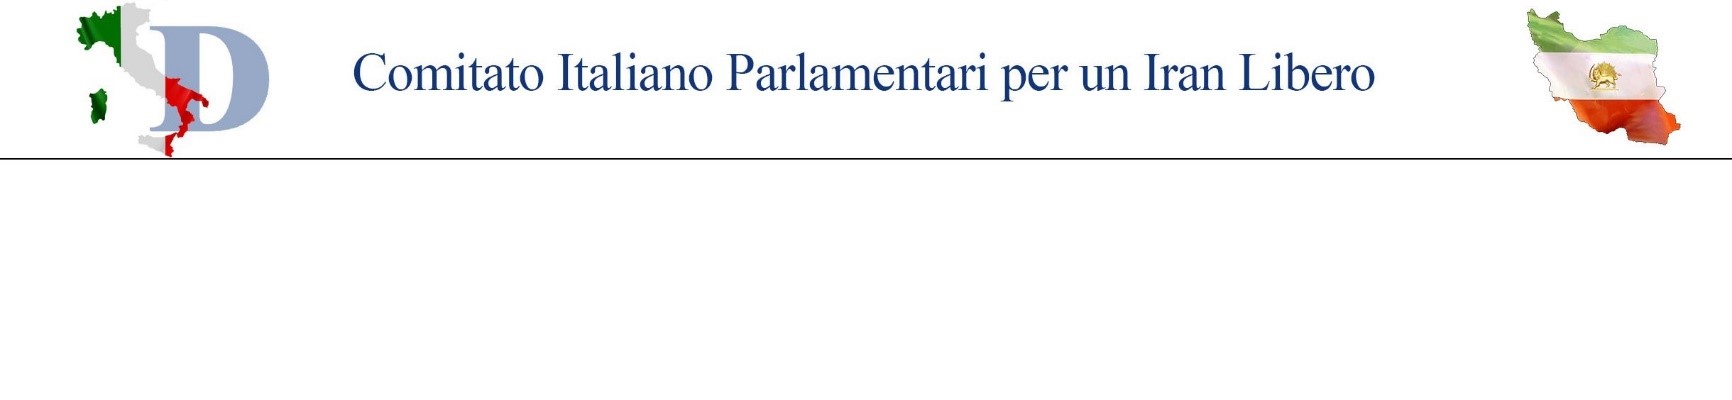 Comitato-Italiano